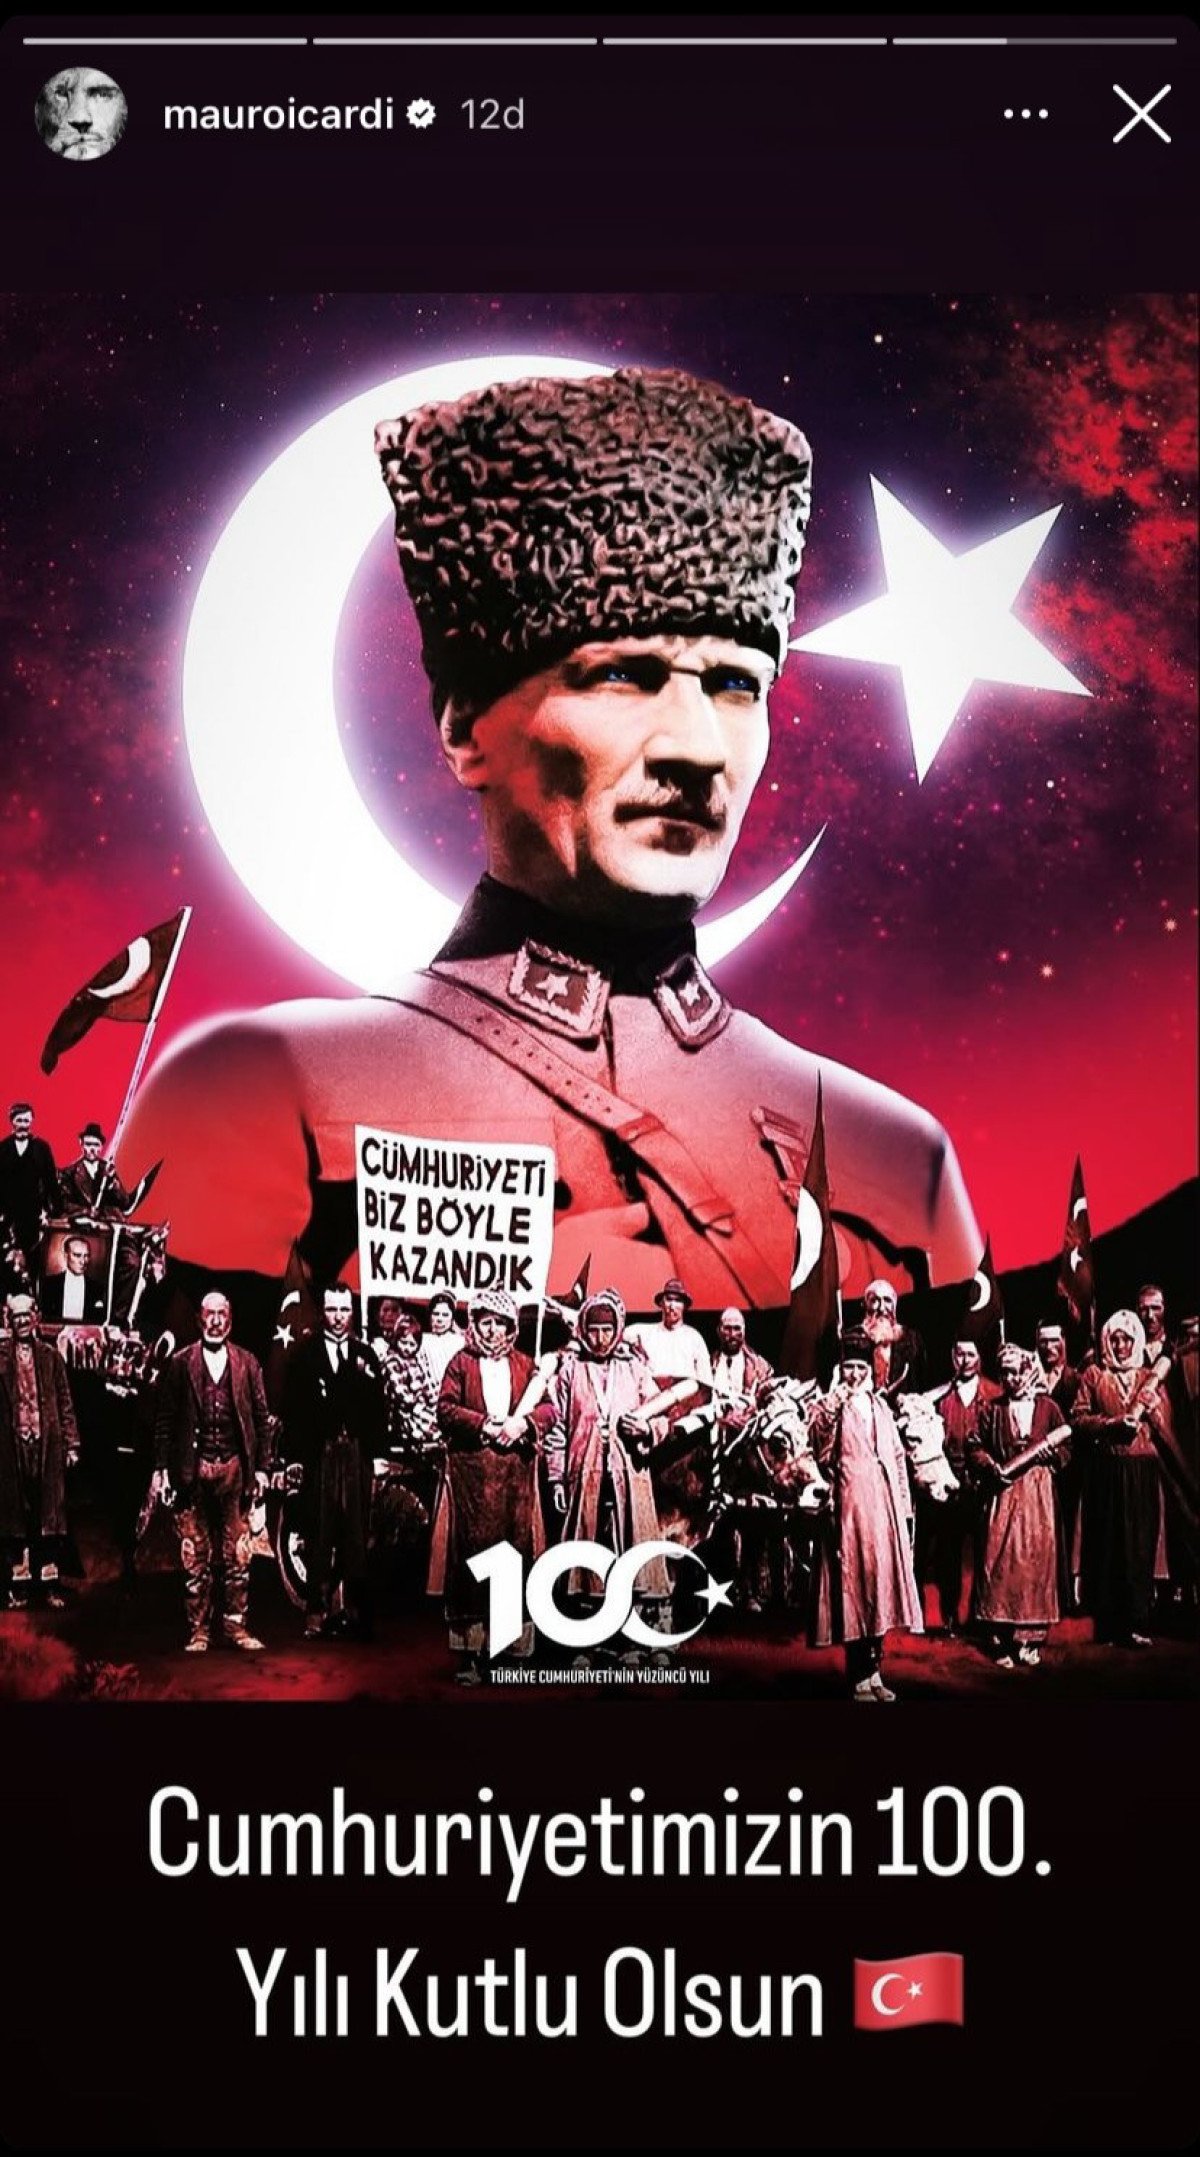 Galatasaray'ın yıldızı Icardi'den Cumhuriyet'in 100. yılına özel paylaşım